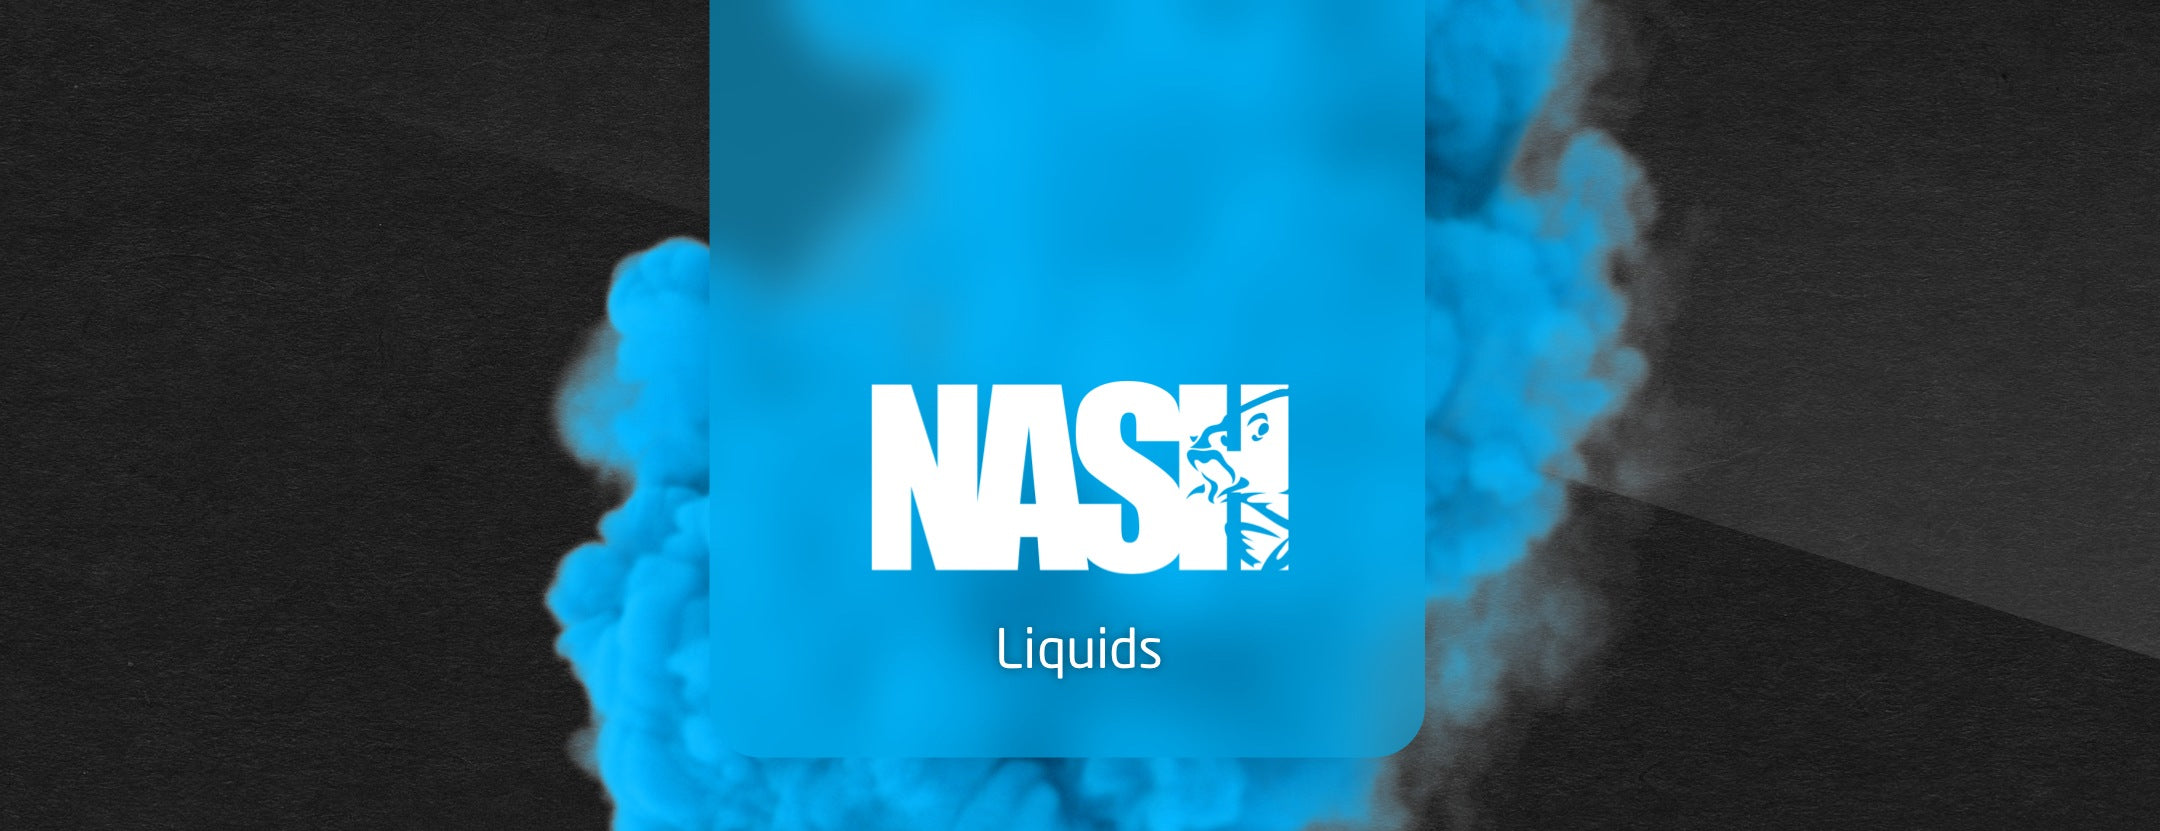 Nash Liquids